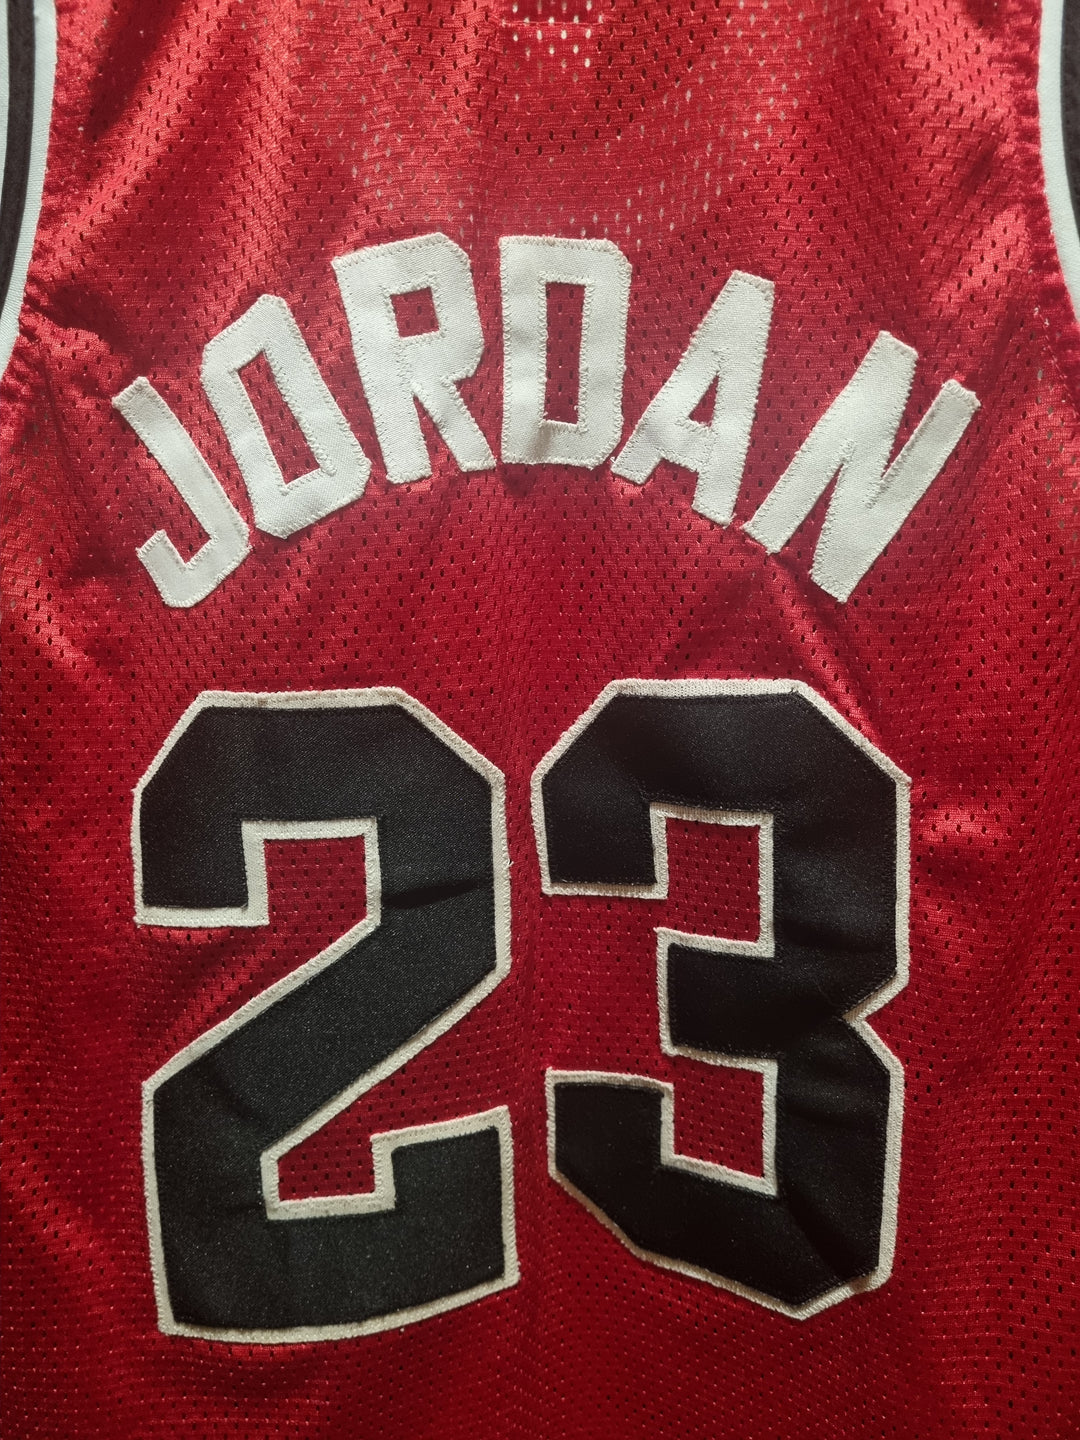 Chicago Bulls Jordan Official Licensed Spalding Medium